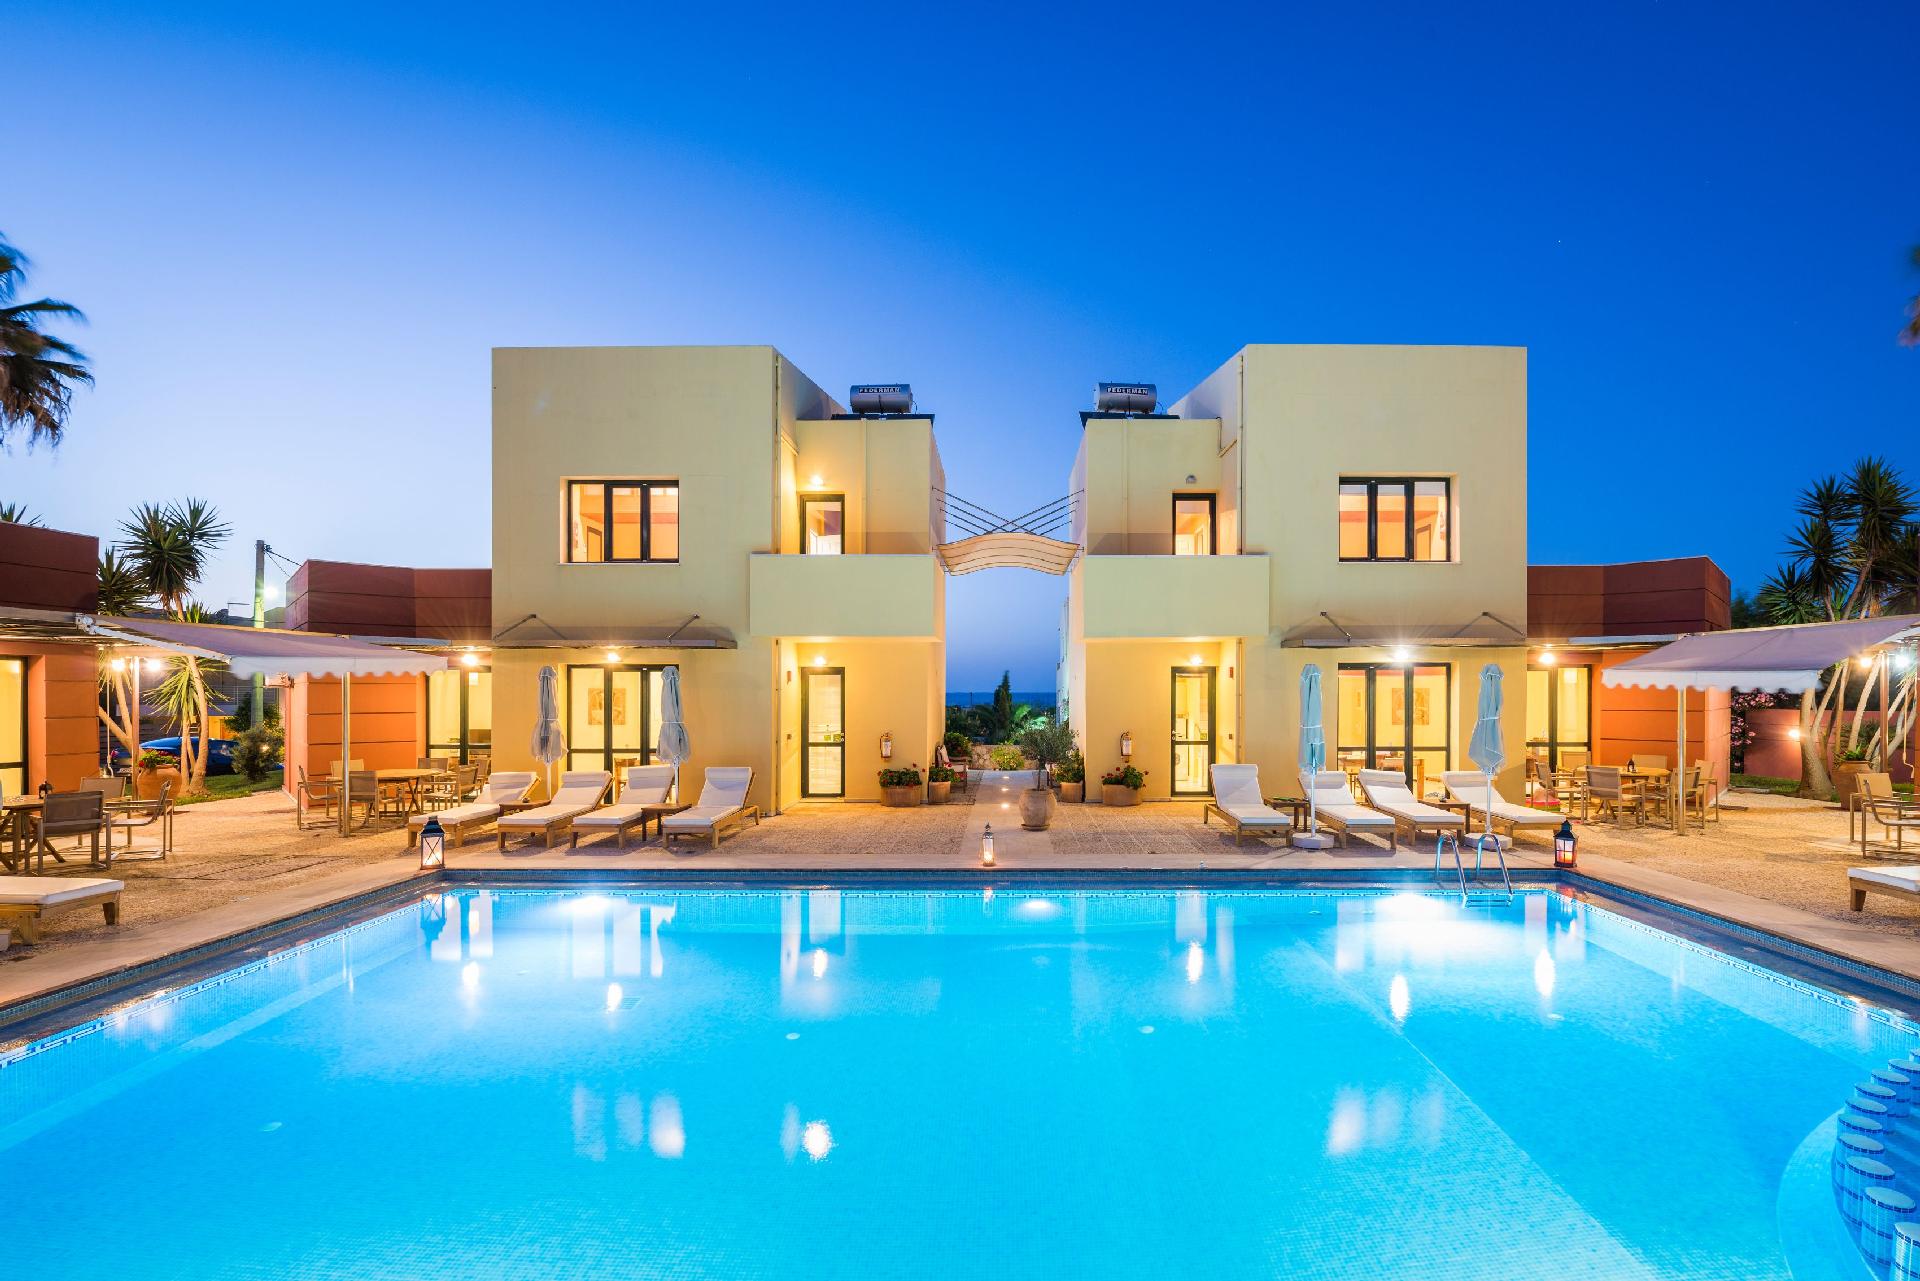 Ferienhaus für 18 Personen ca. 330 m² in Ferienwohnung in Griechenland